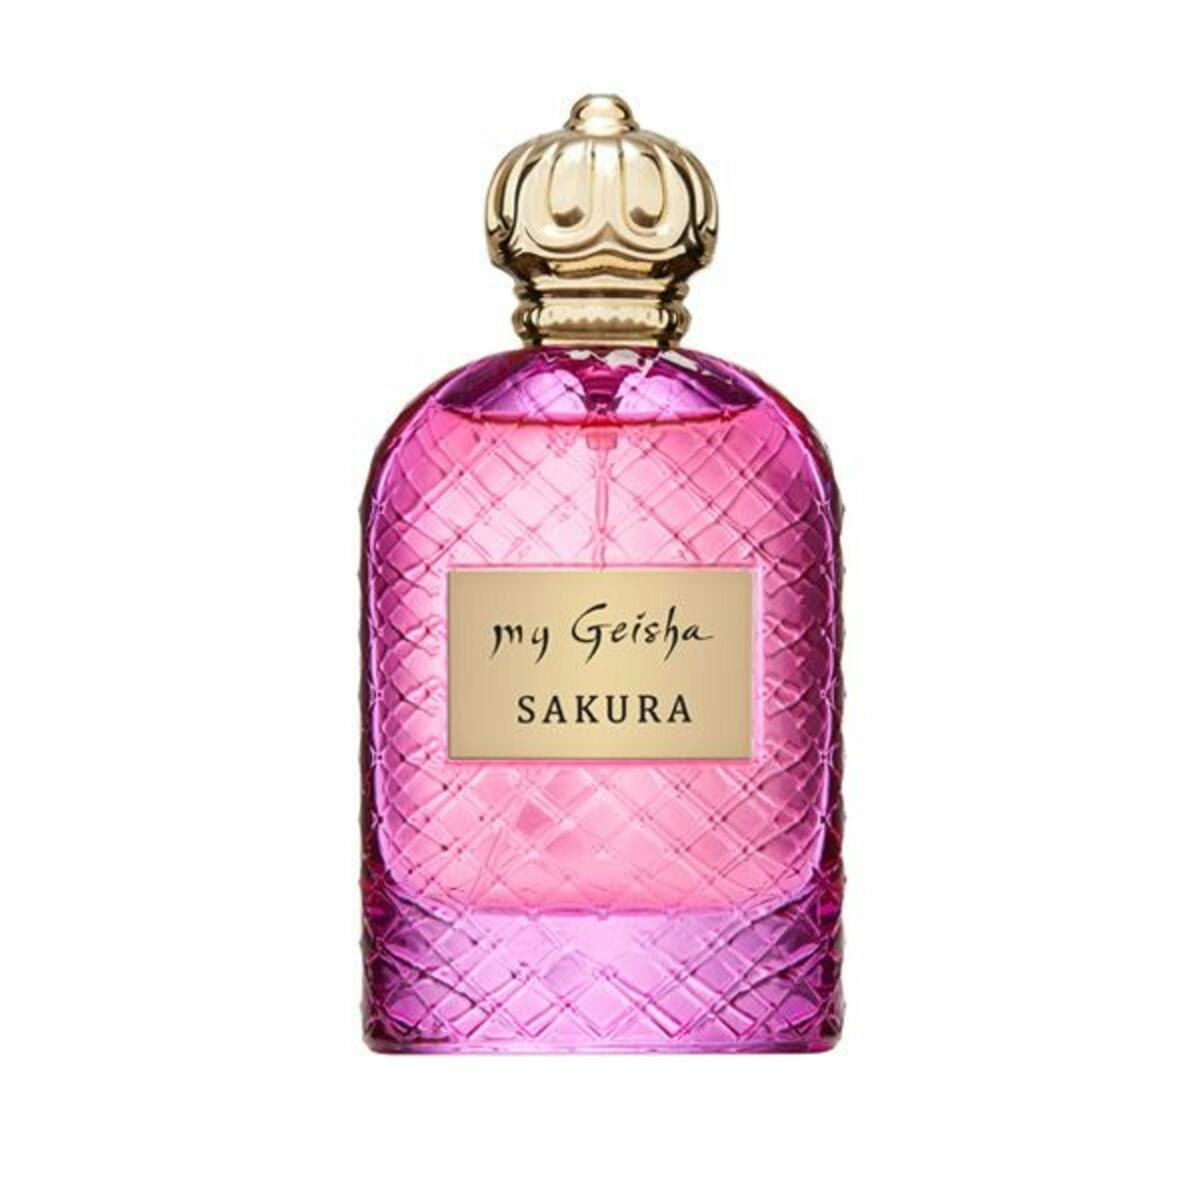 Extrait de parfum SAKURA 100 ml, handwerkliches Produkt für den Direktverkauf in der Schweiz